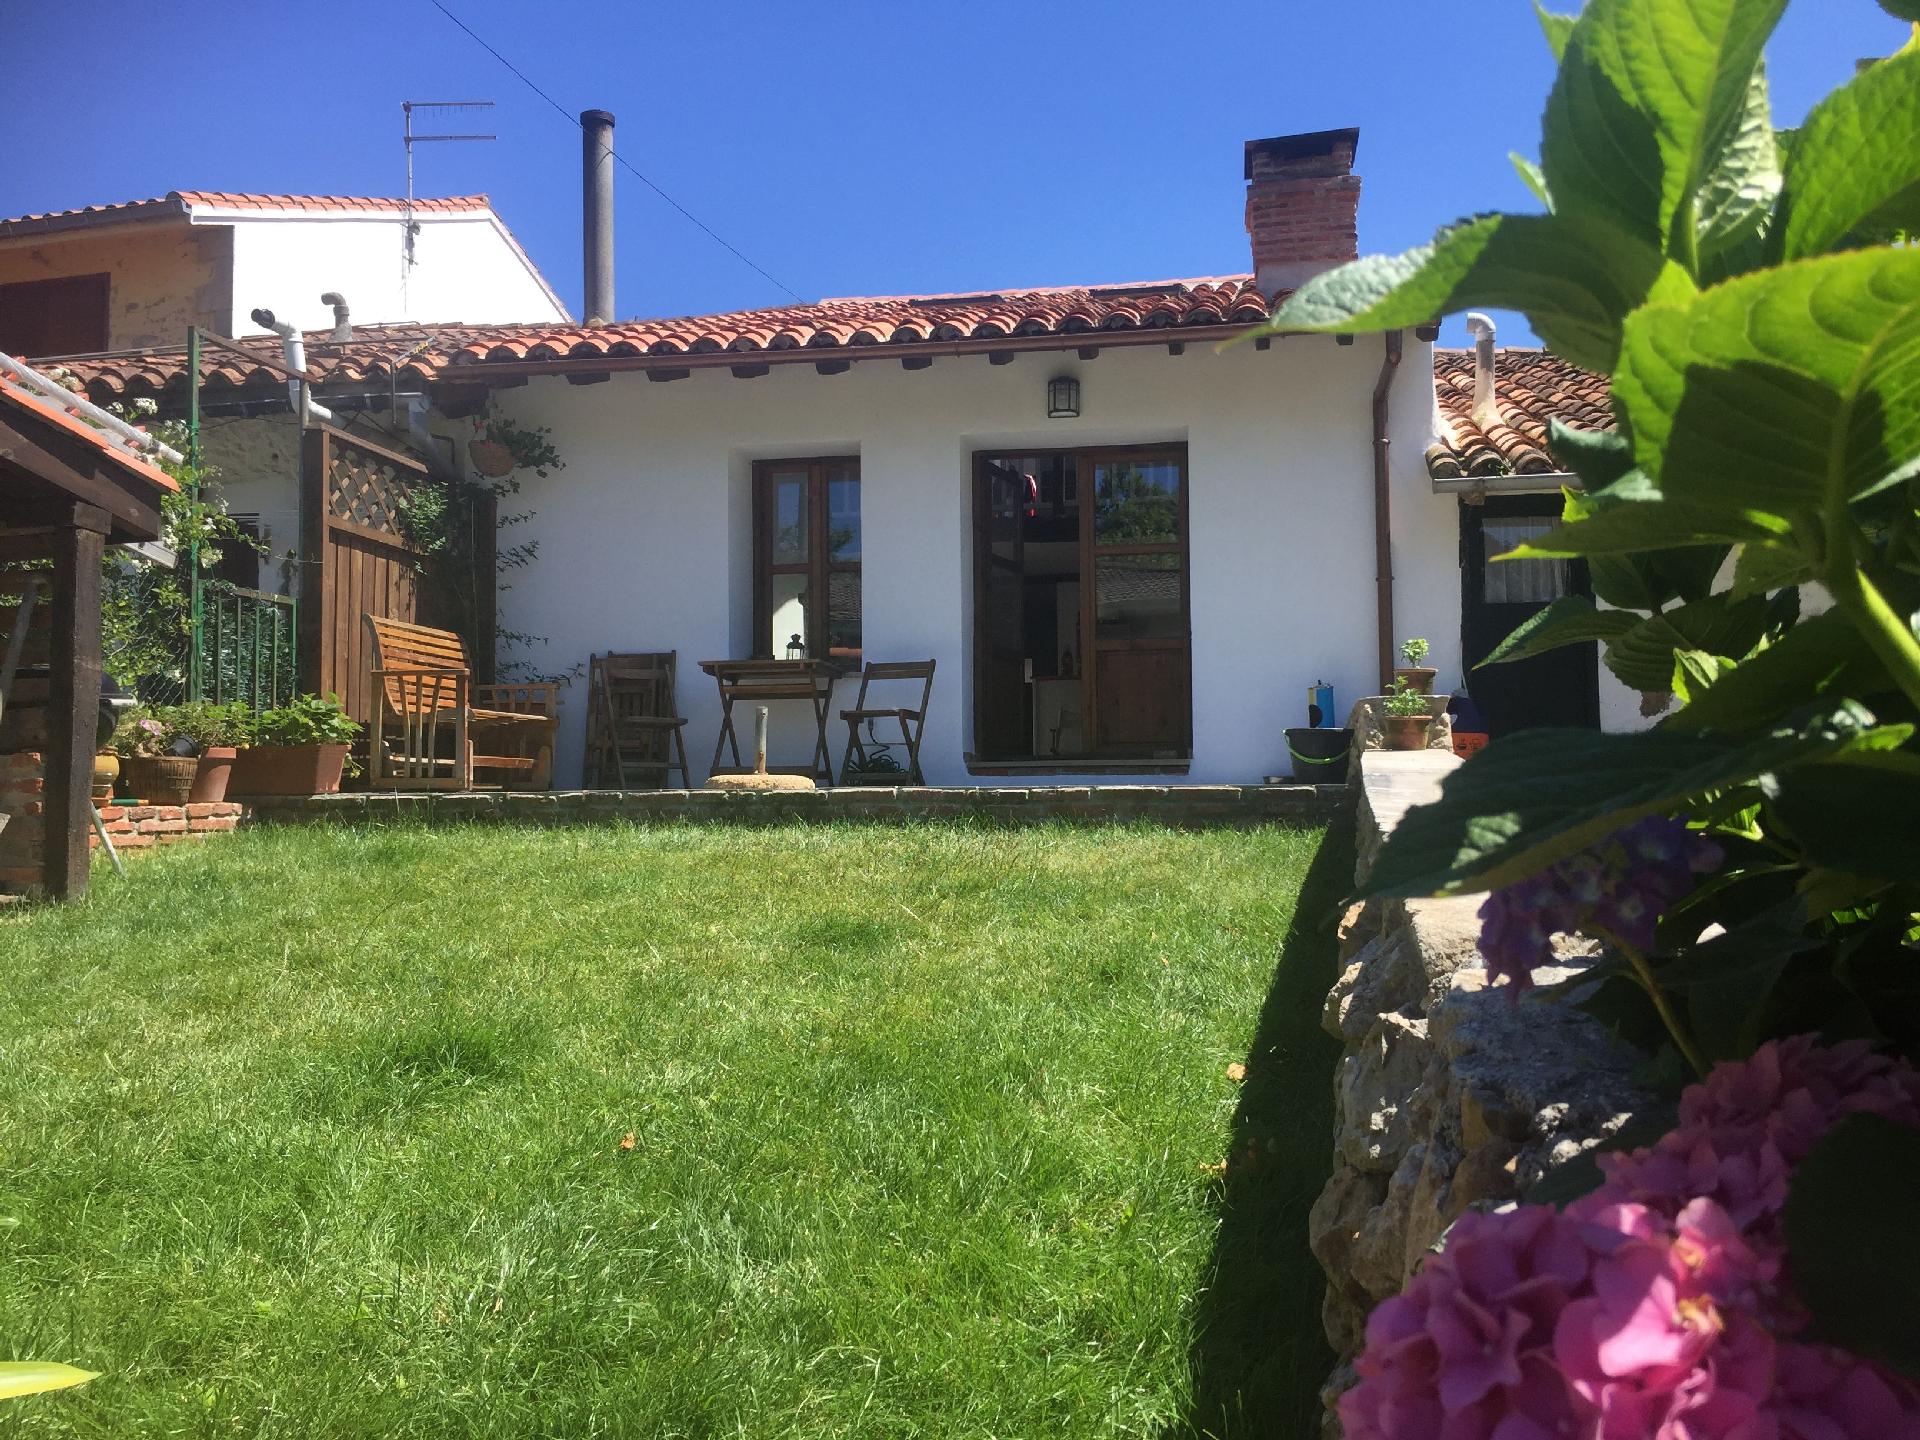 Gemütliches Ferienhaus mit Garten sowie herrl Ferienhaus in Spanien